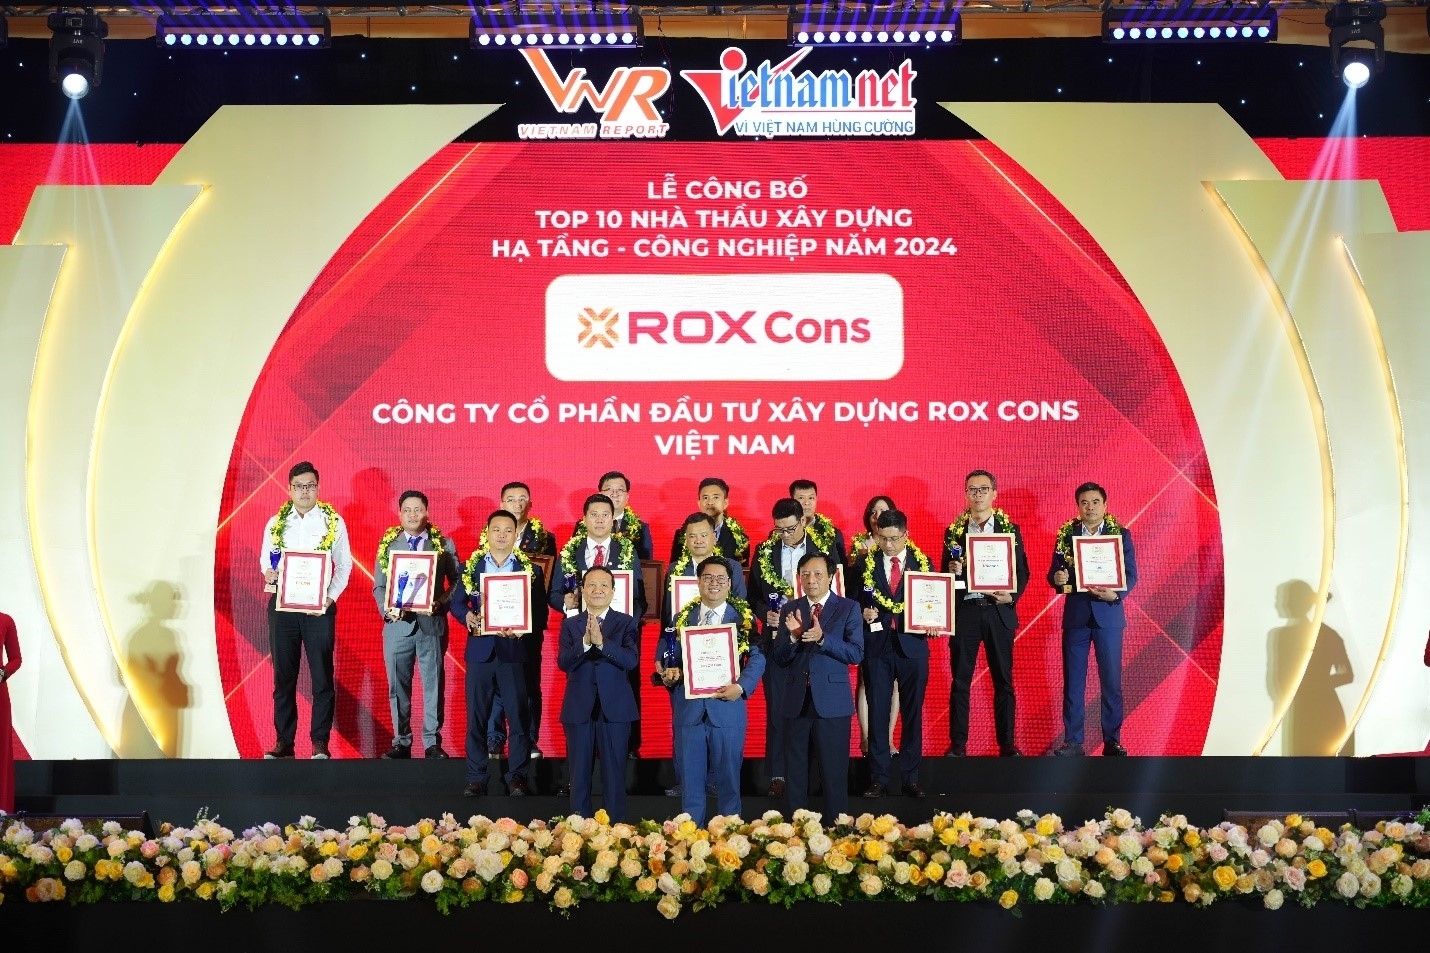 ROX Cons được vinh danh tại hai bảng xếp hạng của Vietnam Report